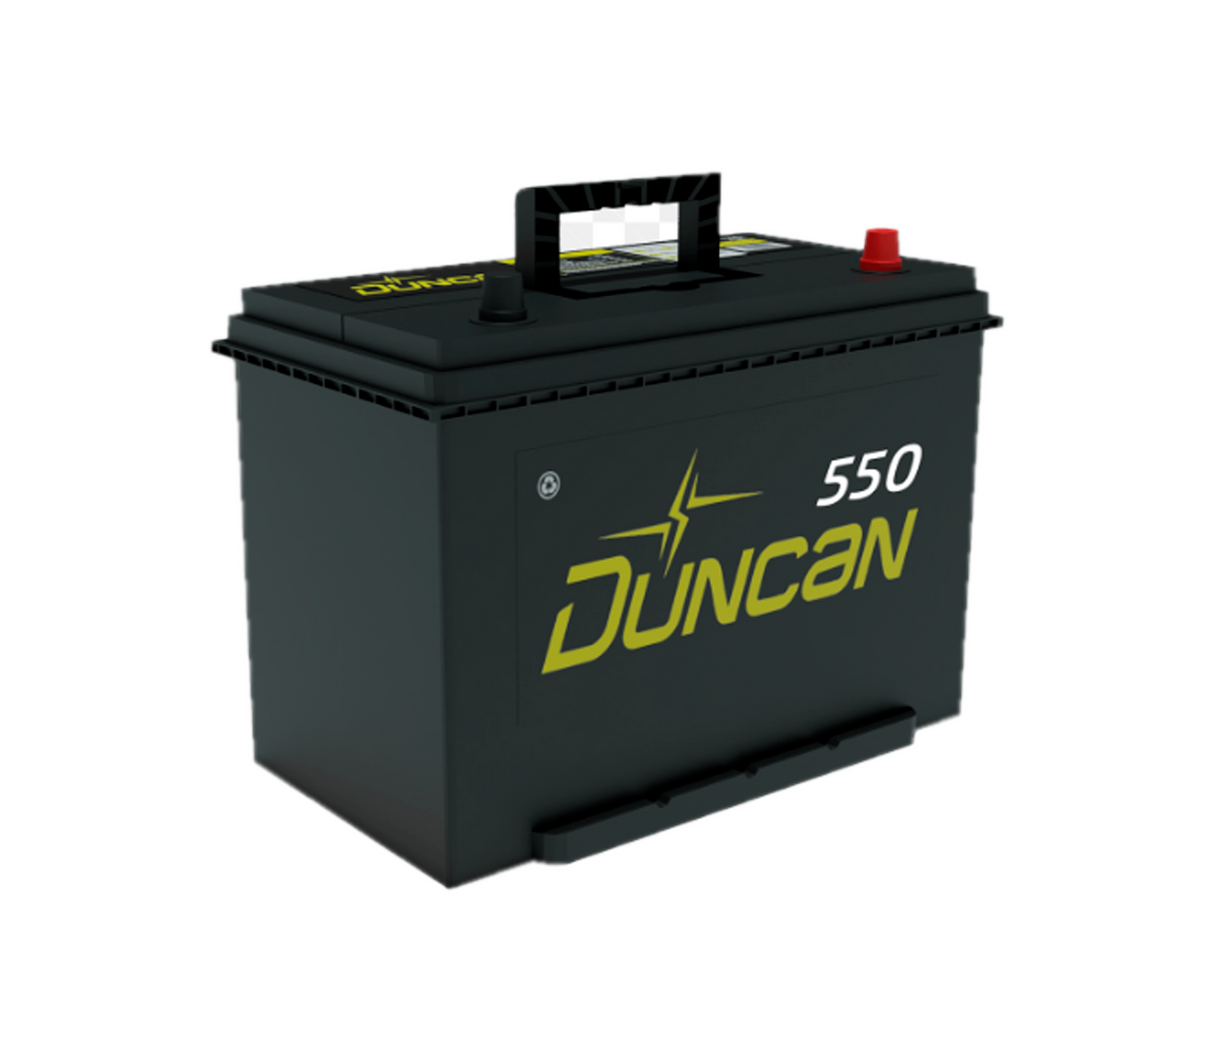 Batería de vehículo DNS40R-550 Duncan